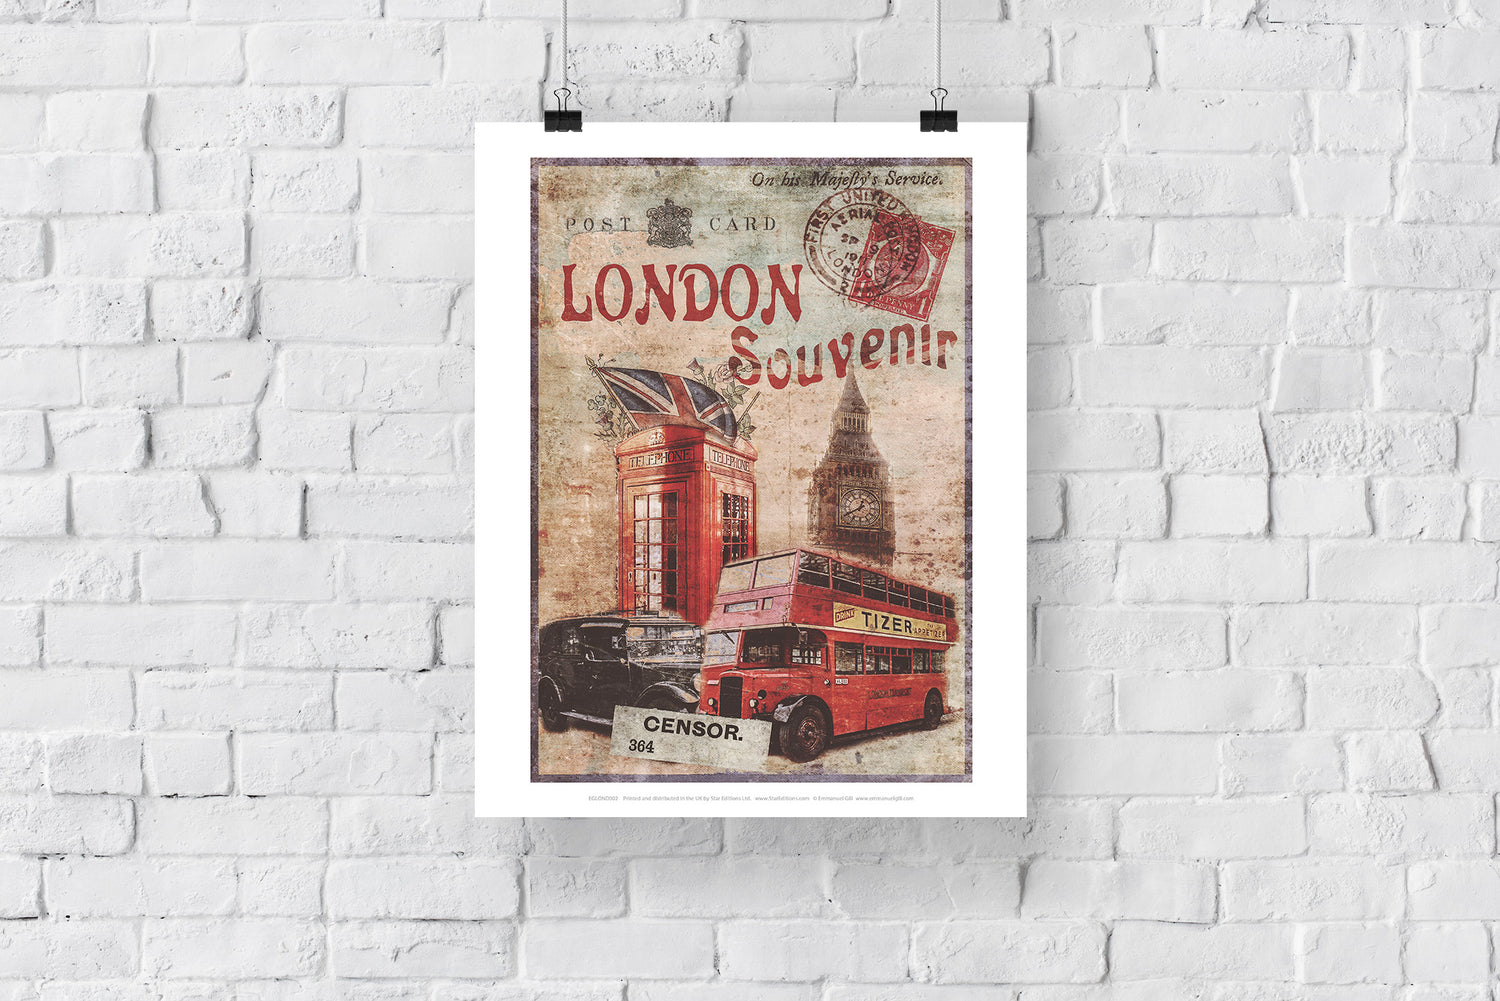 London Souvenir - Art Print